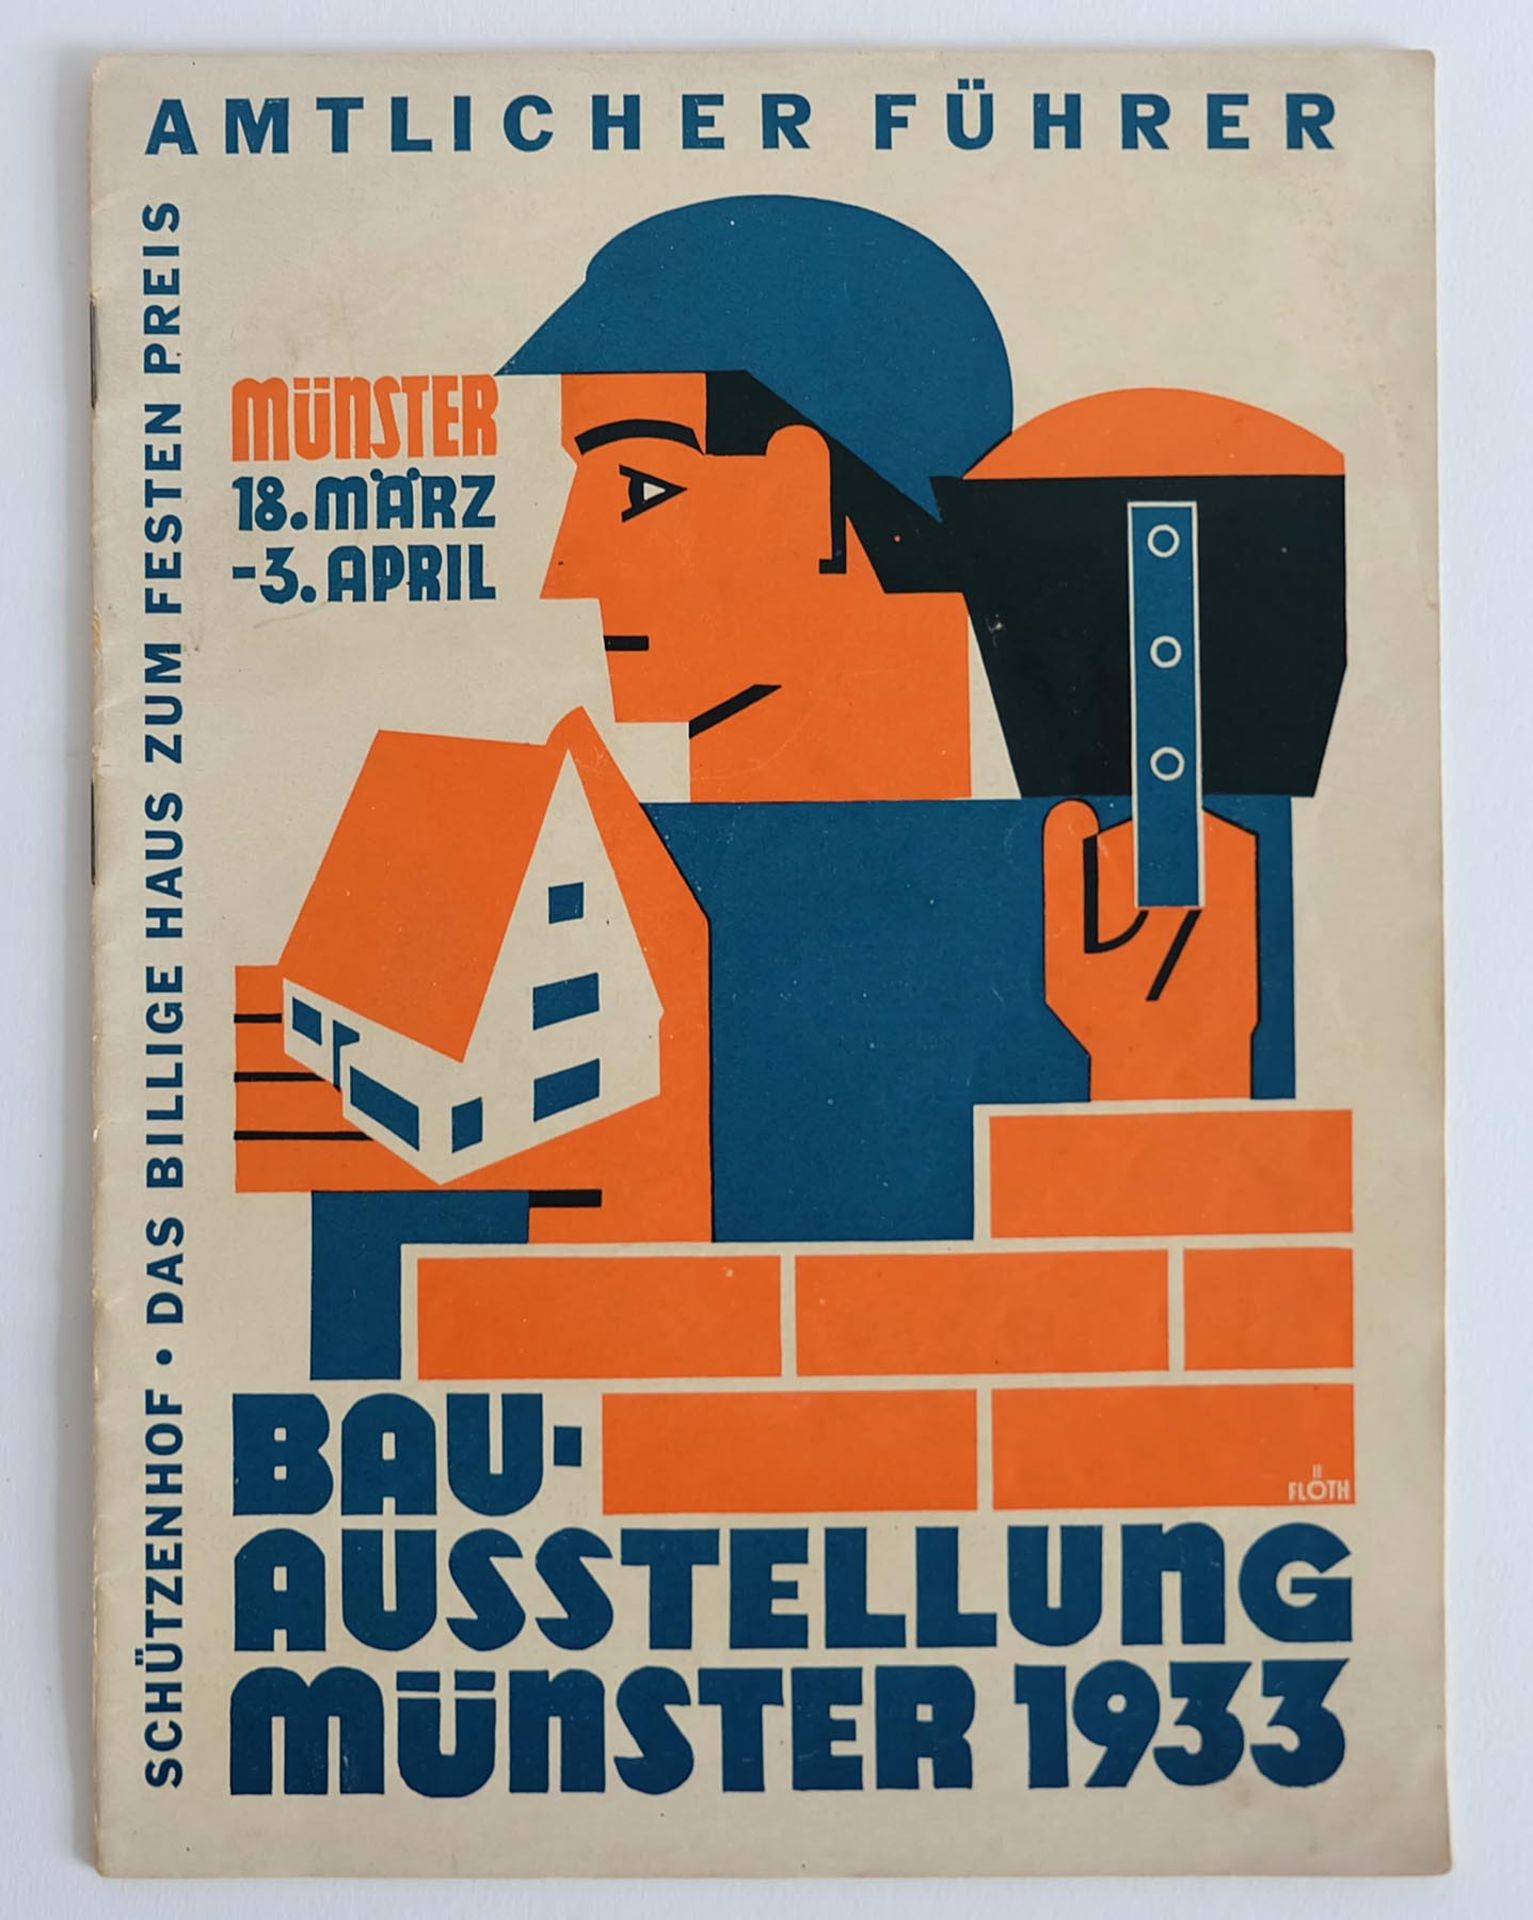 BAUAUSTELLUNG MÜNSTER 1933, Amtlicher Führer, Münster 18.März-3.April, broschiert, zahlreiche s/w-